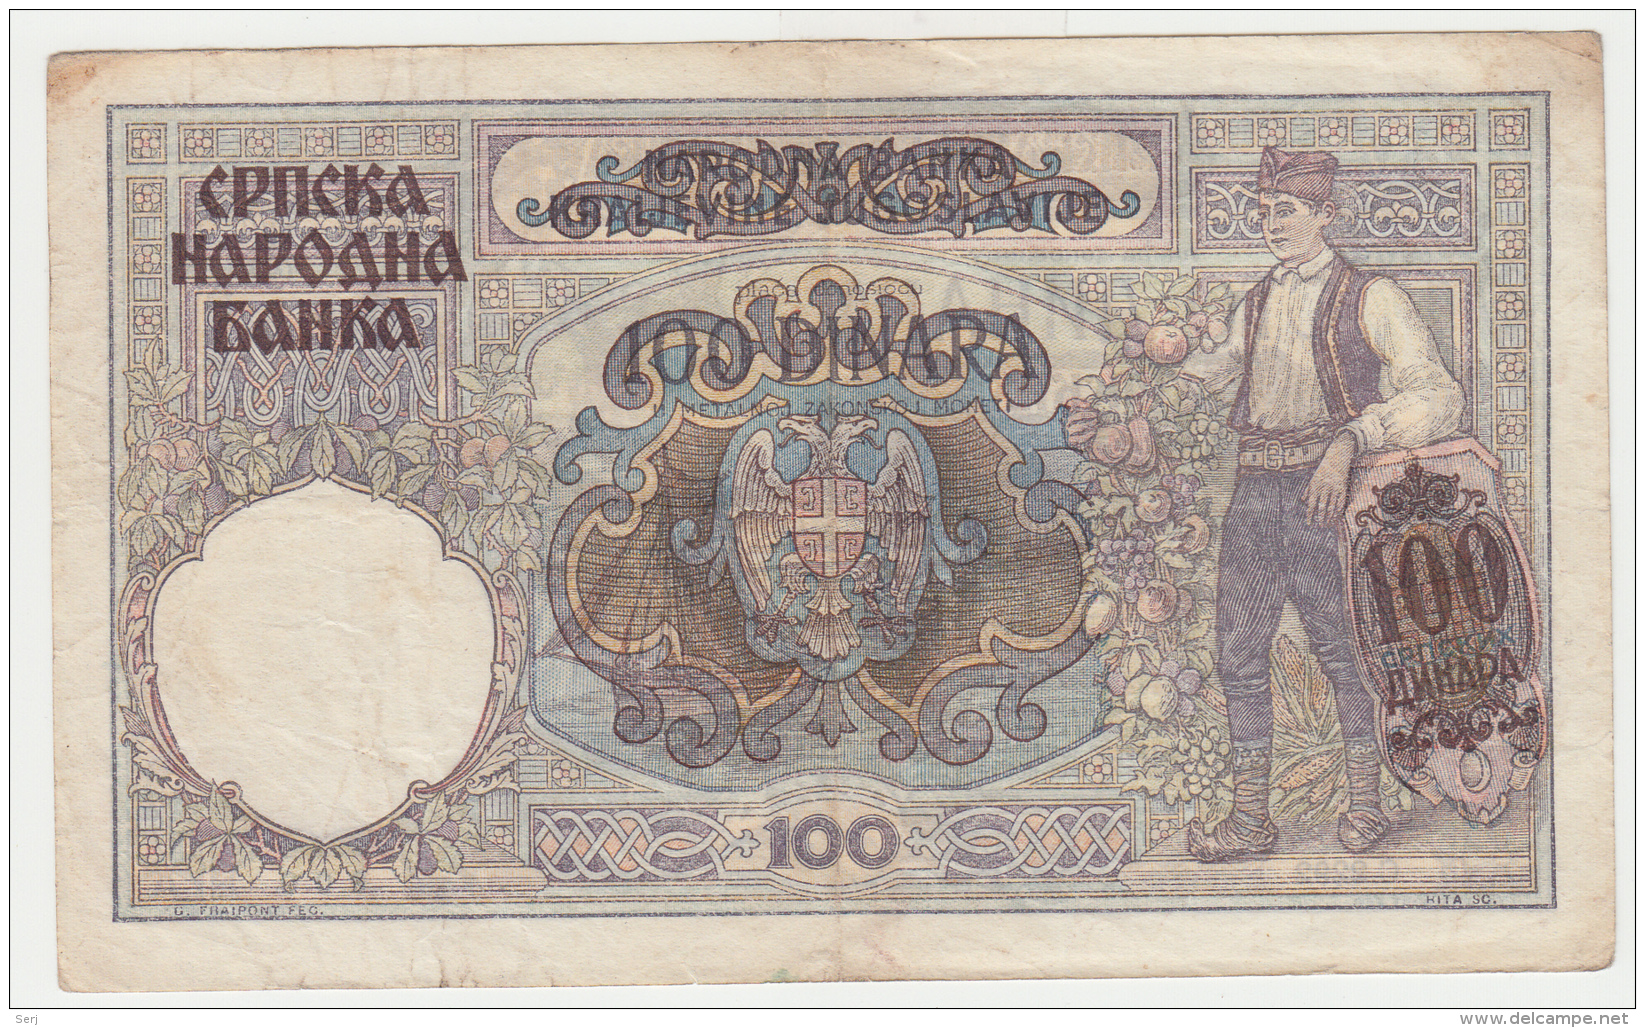 SERBIA 100 Dinars 1941 VF Pick 23 - Serbia